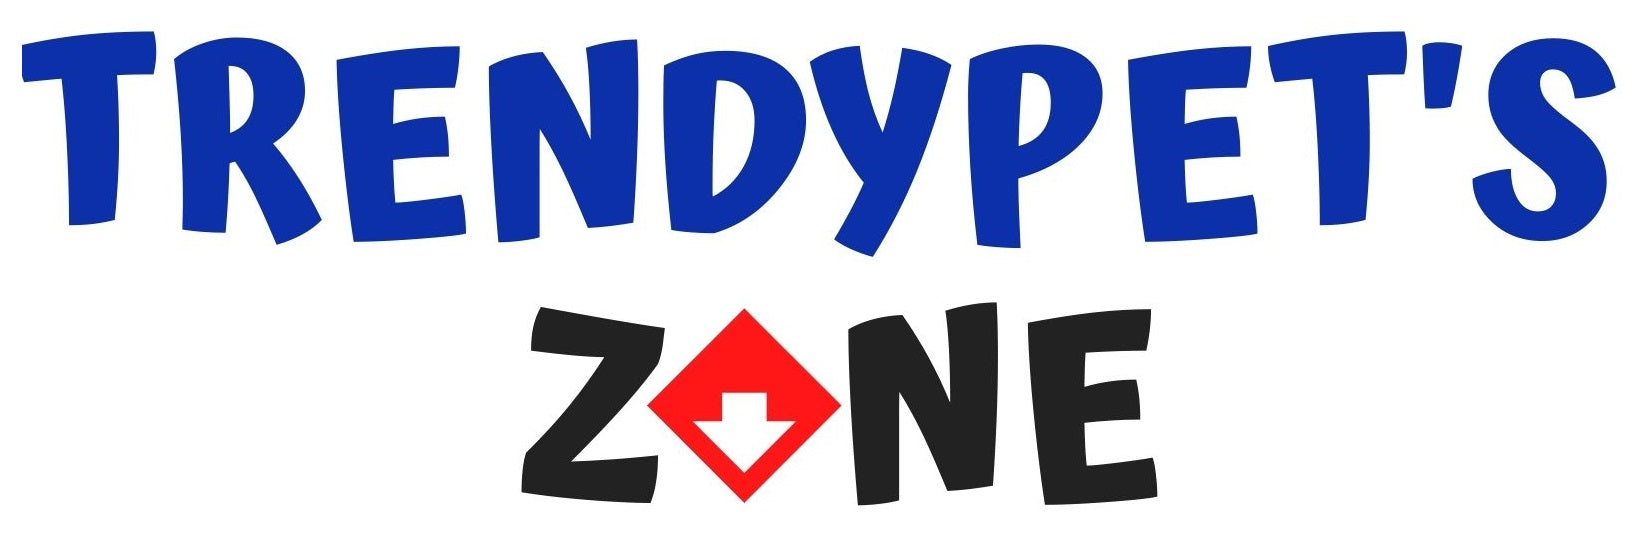 Trendypet's Zone